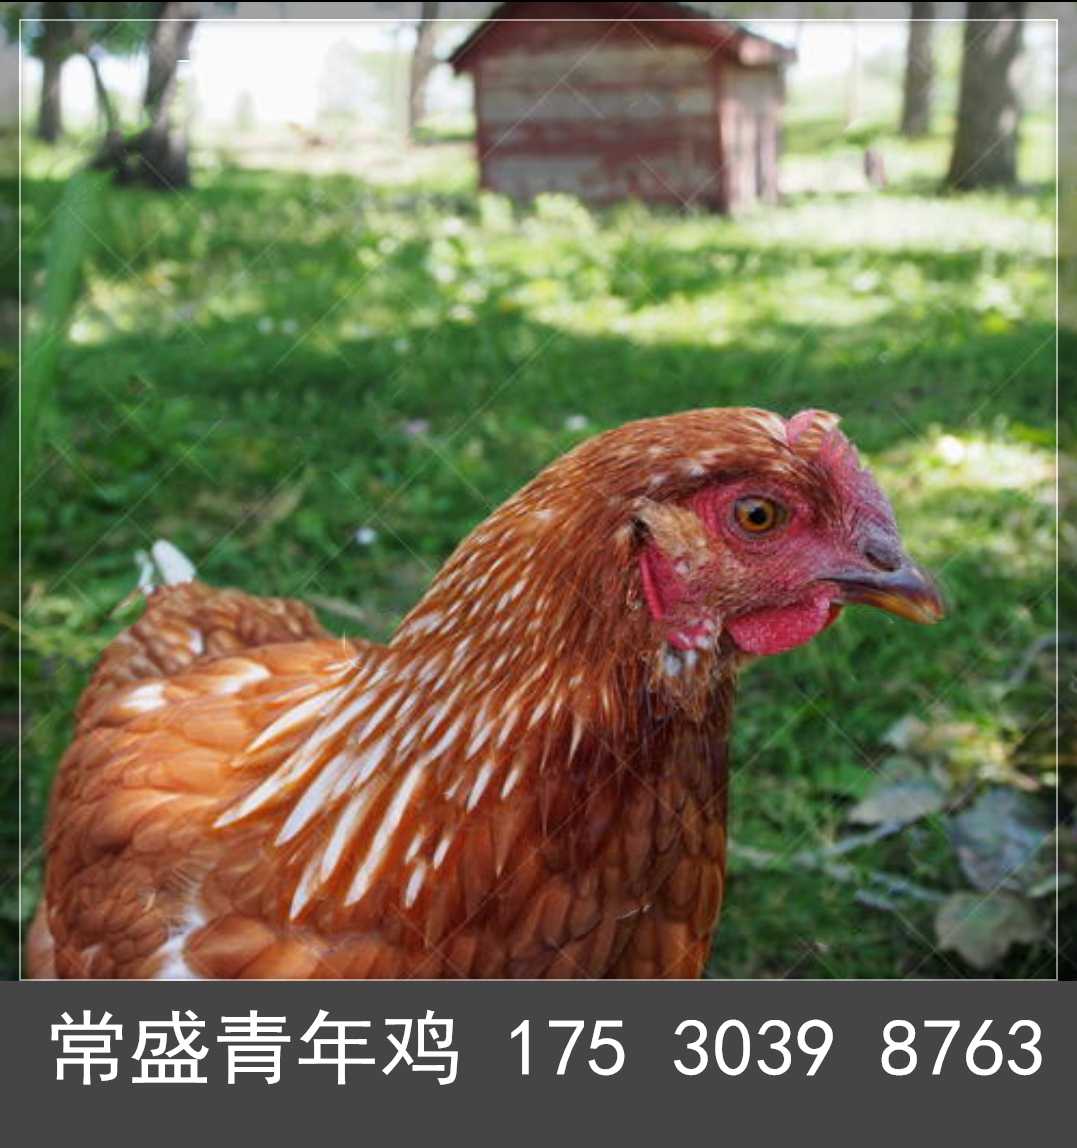 黄冈常盛蛋鸡青年鸡养殖场常年供应各品种青年鸡 育成鸡 鸡苗 脱温鸡3